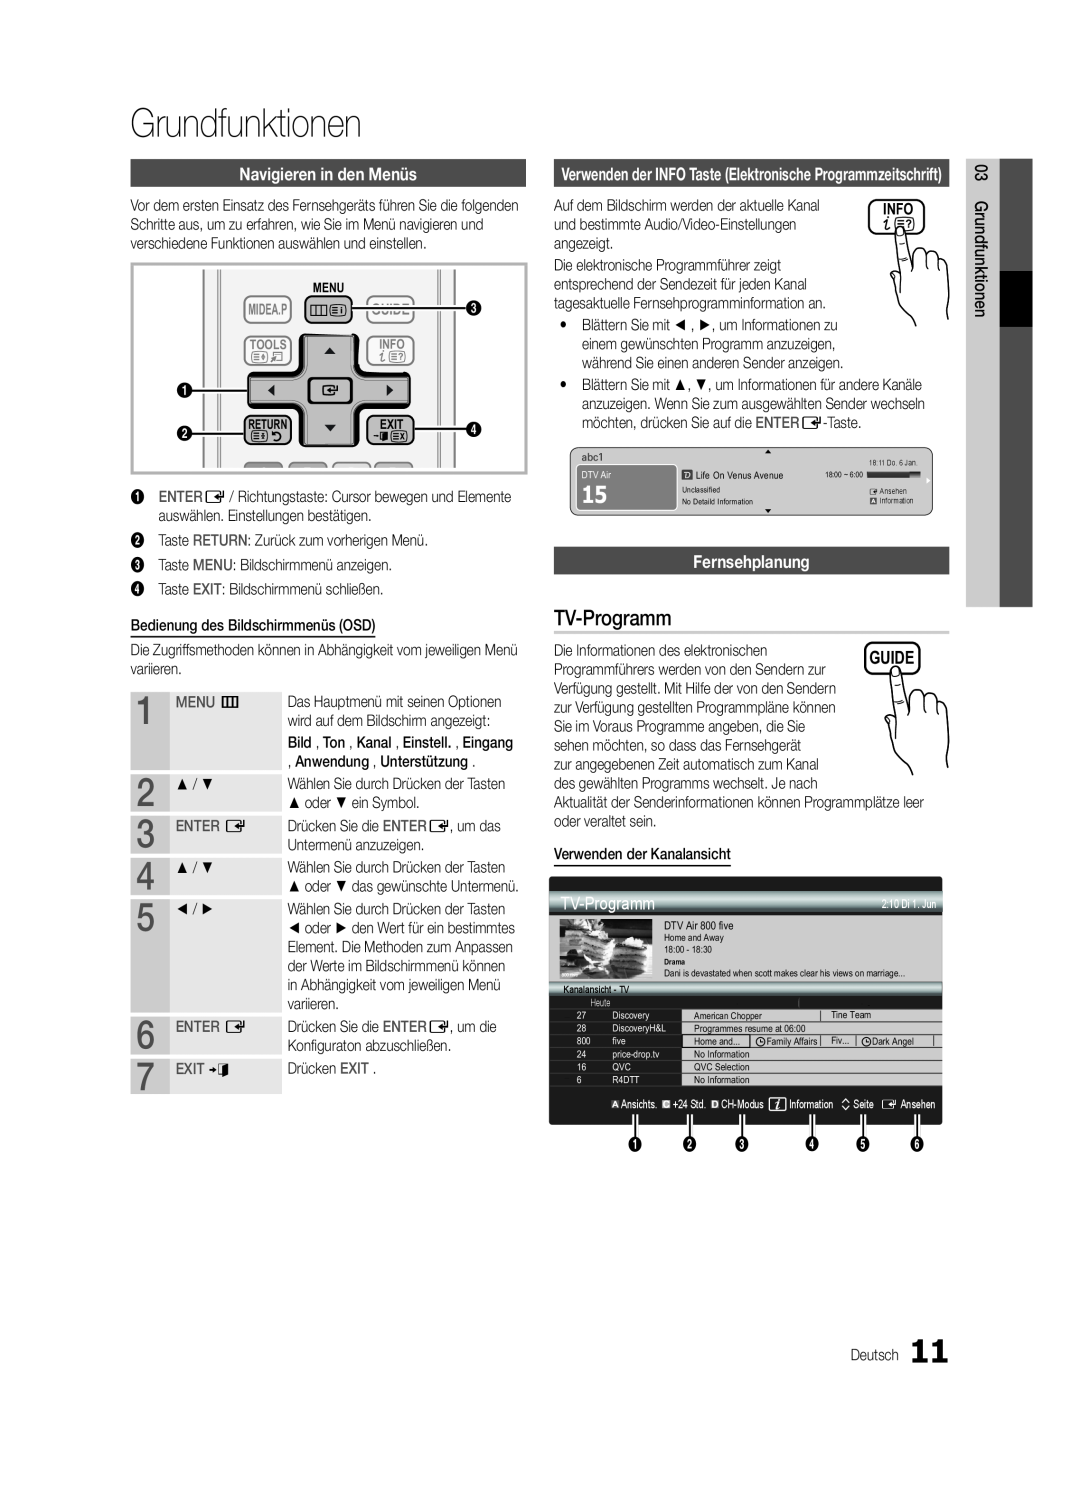 Samsung UE46C5700QSXZG manual Grundfunktionen, TV-Programm, Navigieren in den Menüs, Fernsehplanung, Guide, MENU m, Enter E 